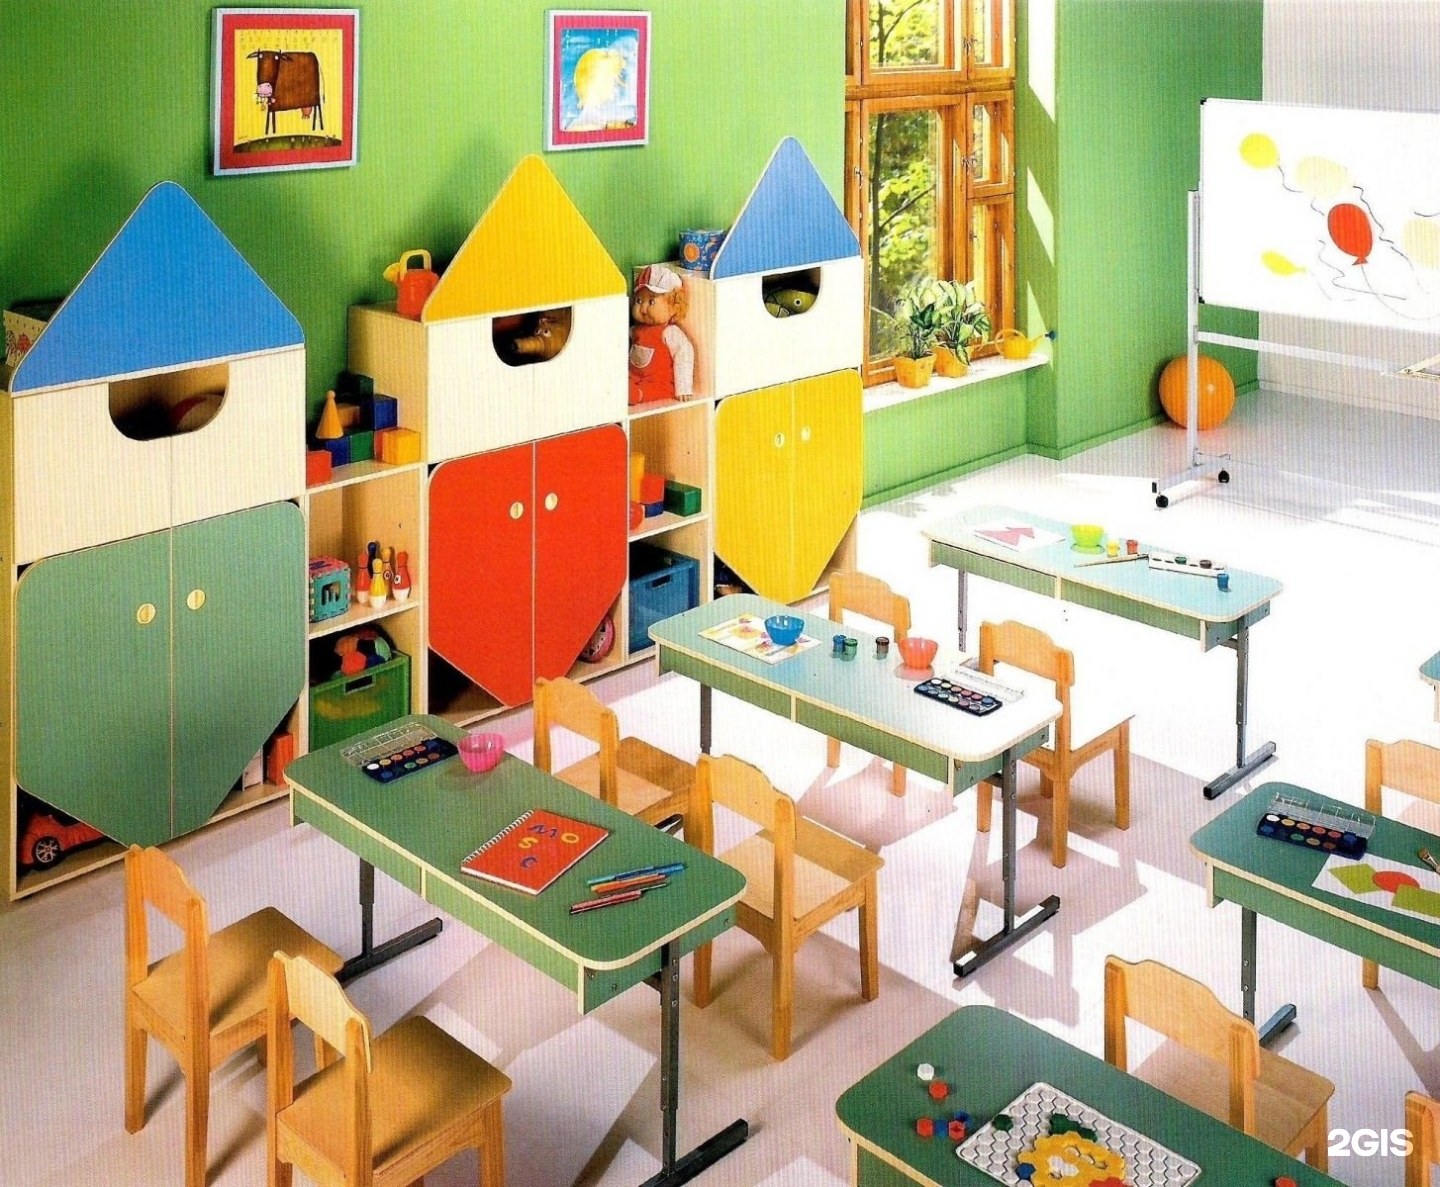 Сайт детской мебели для детских садов. Мебель для детей в детском саду. Современная мебель для детского сада. Мебель для ясельной группы детского сада. Современный детский сад.